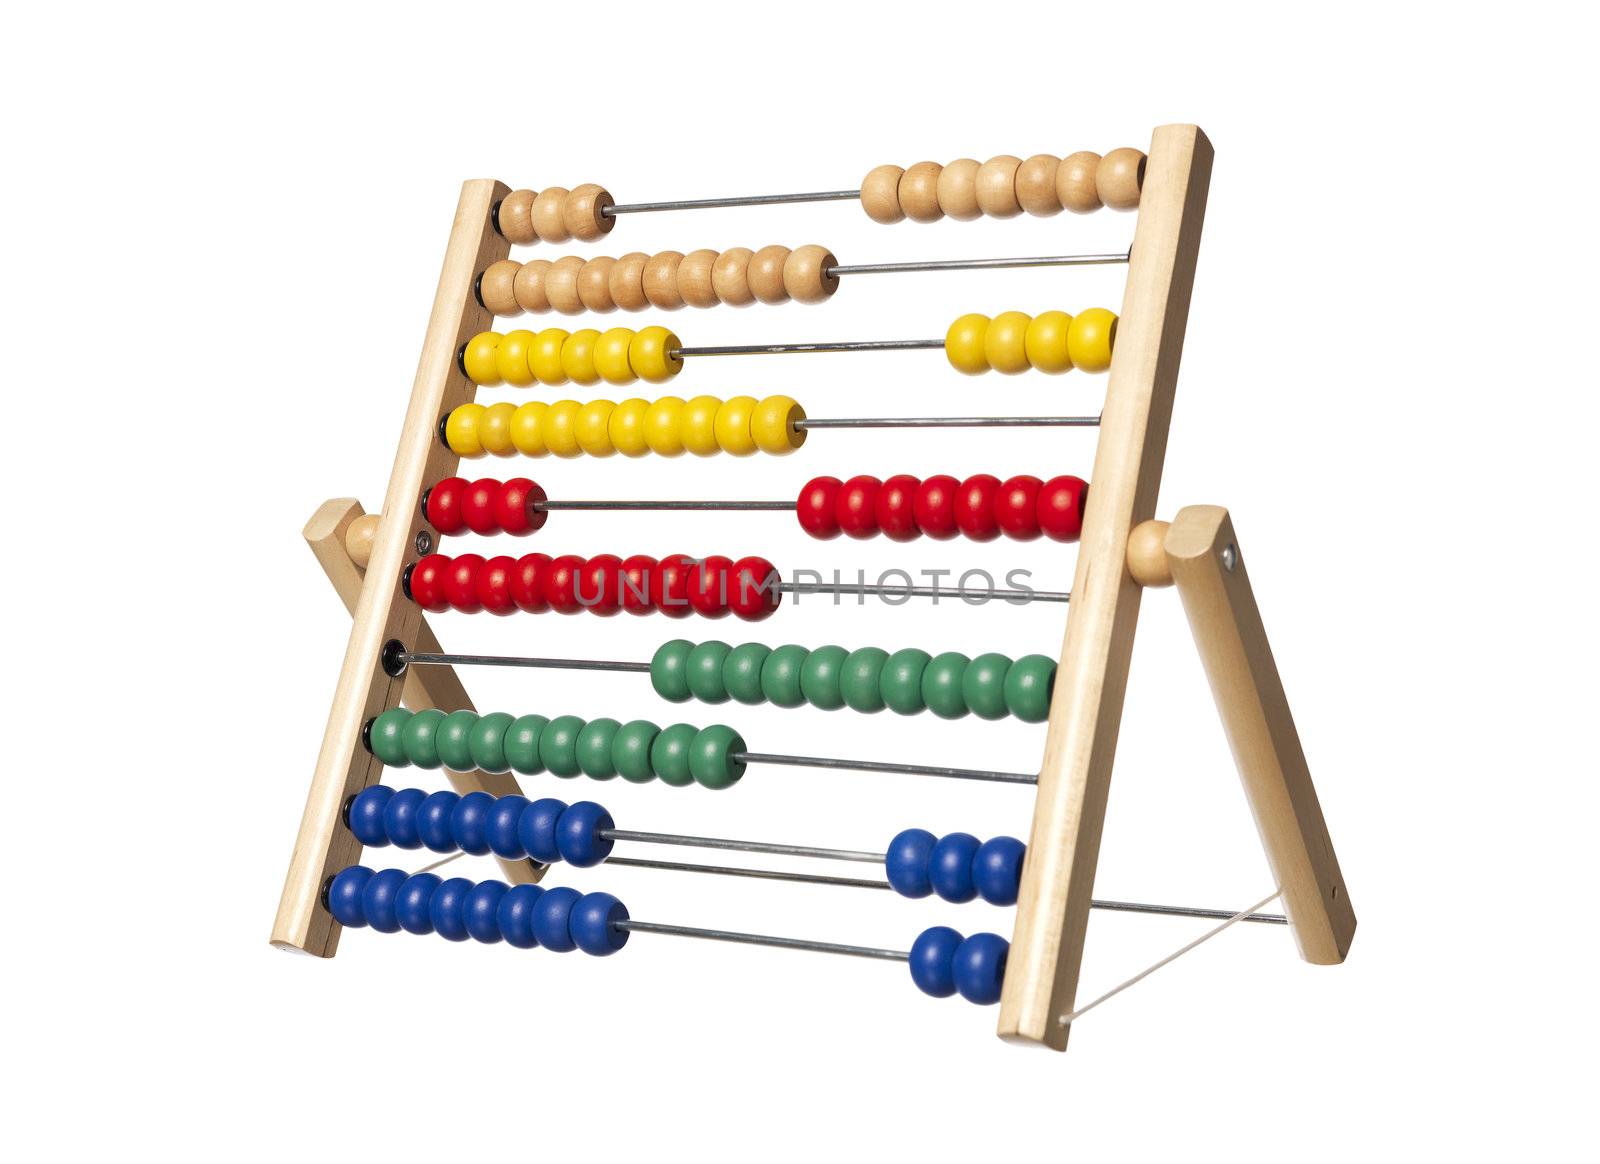 Abacus by gemenacom